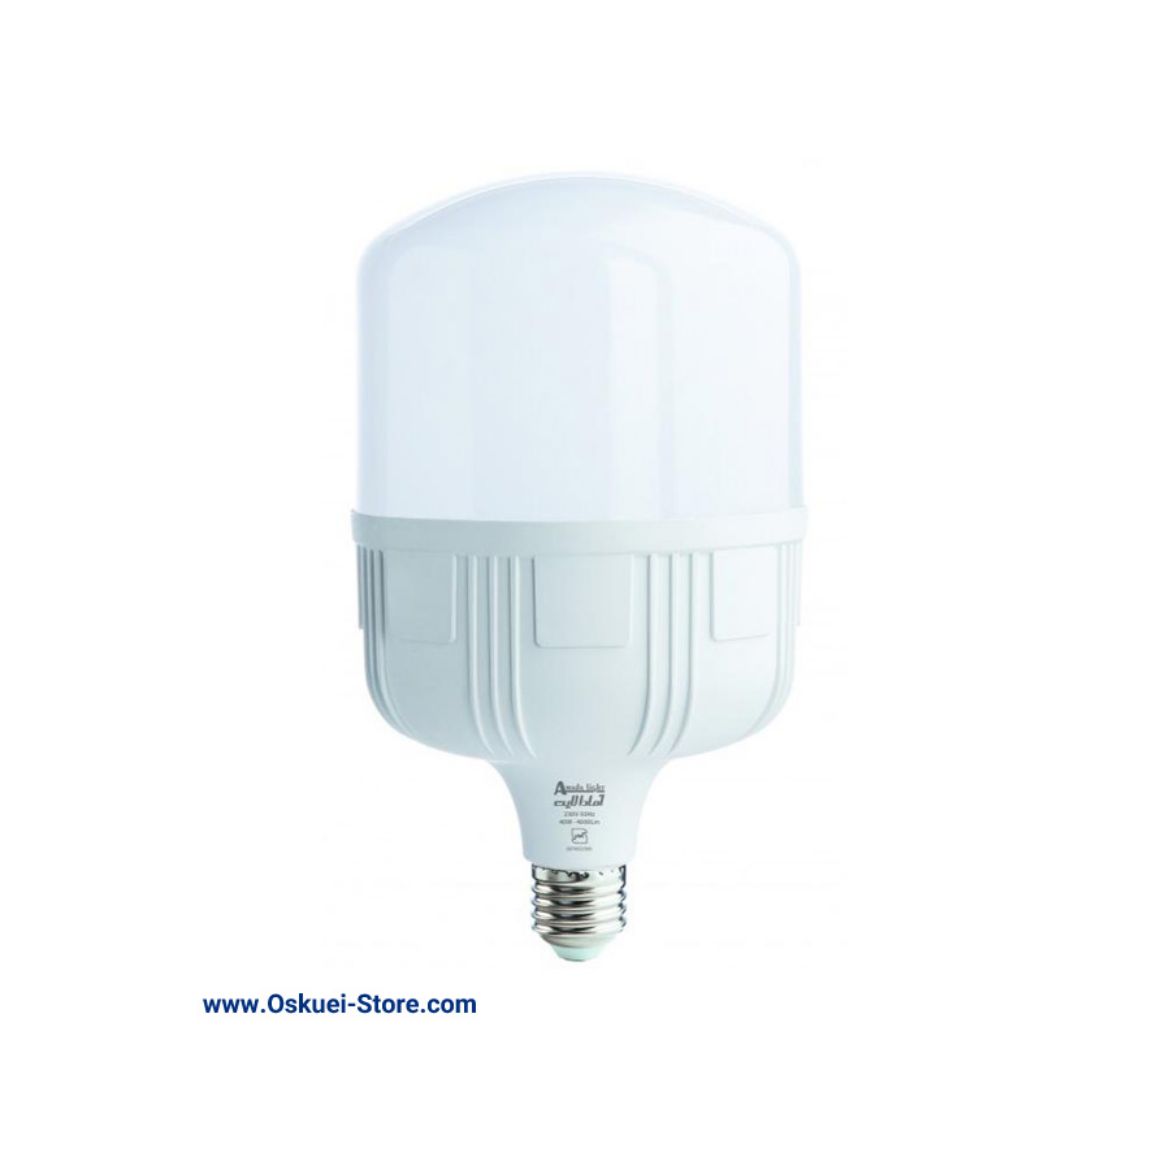 Amada light 50 Watt LED LAMP